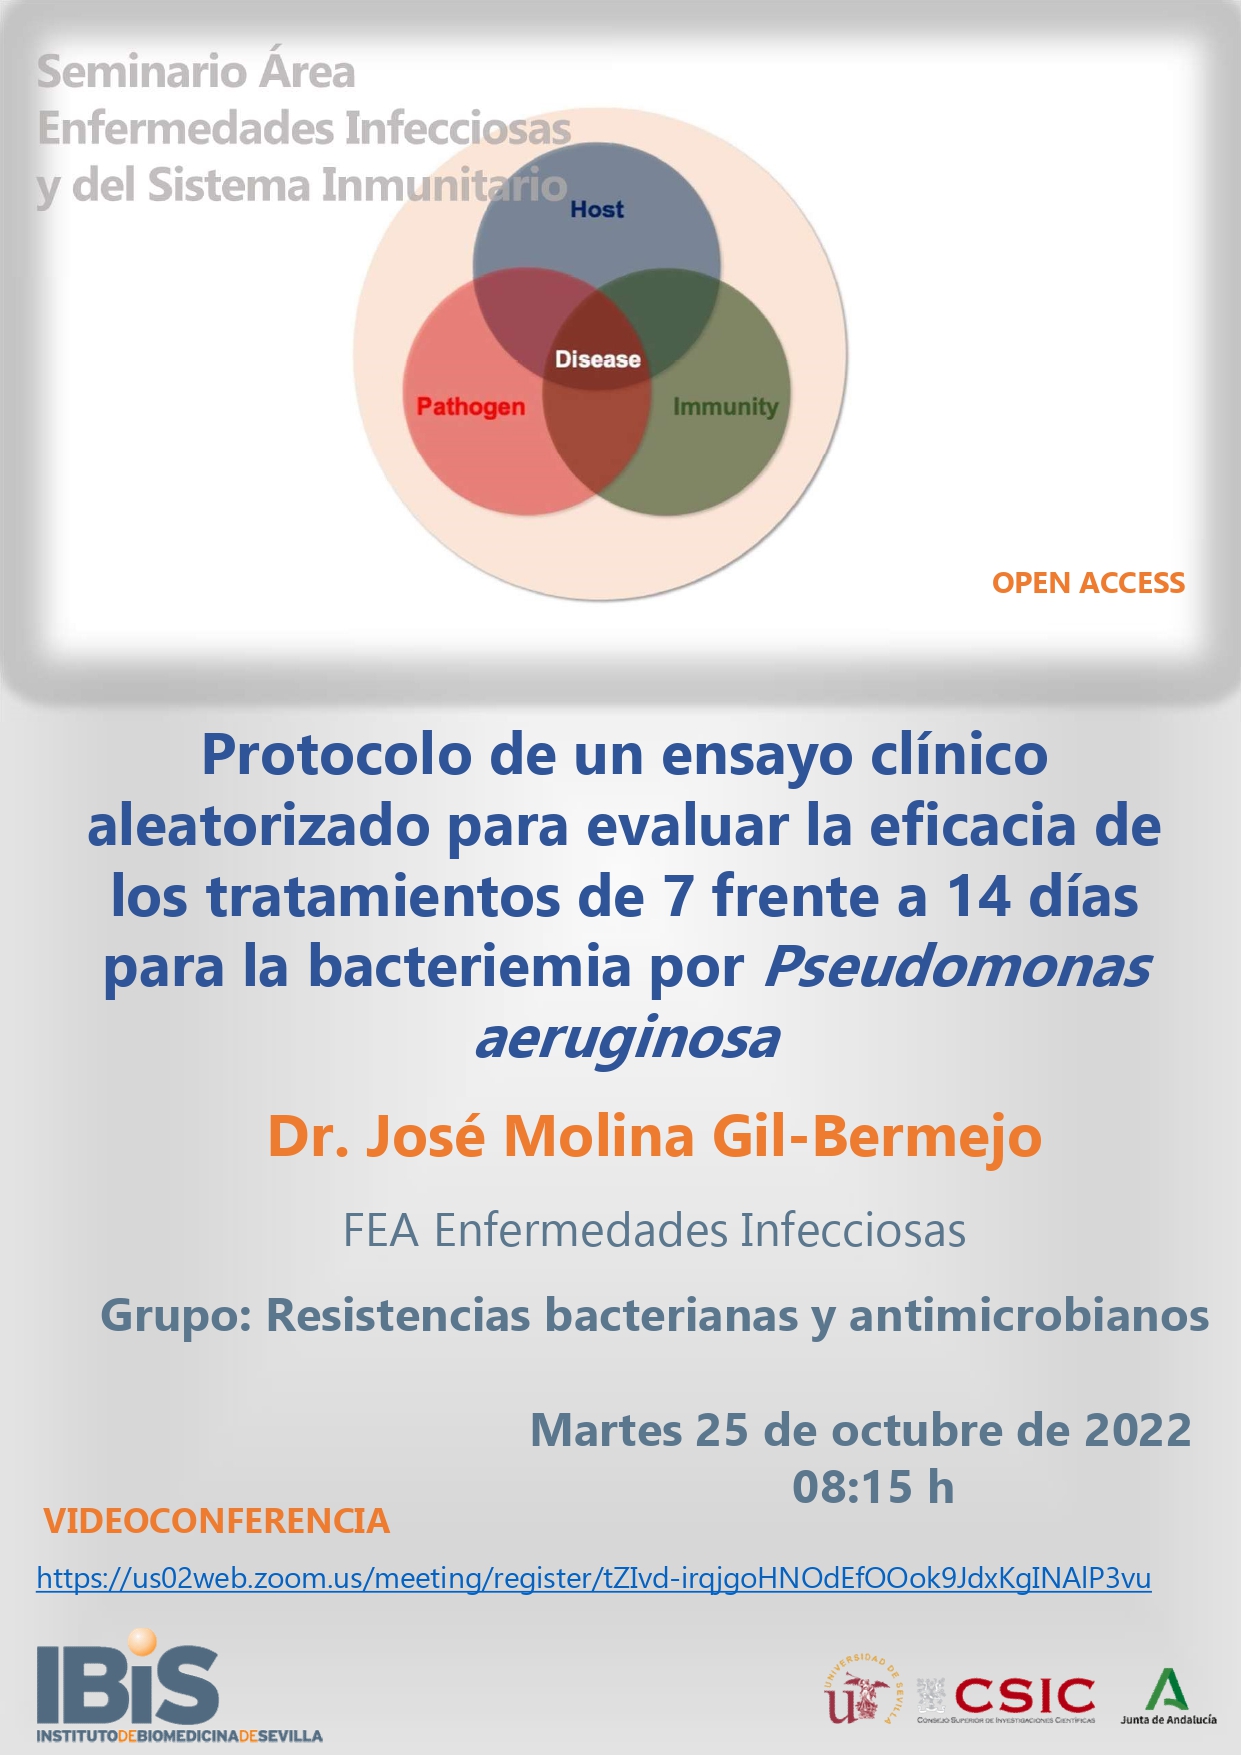 Poster: Protocolo de un ensayo clínico aleatorizado para evaluar la eficacia de los tratamientos de 7 frente a 14 días para la bacteriemia por Pseudomonas aeruginosa